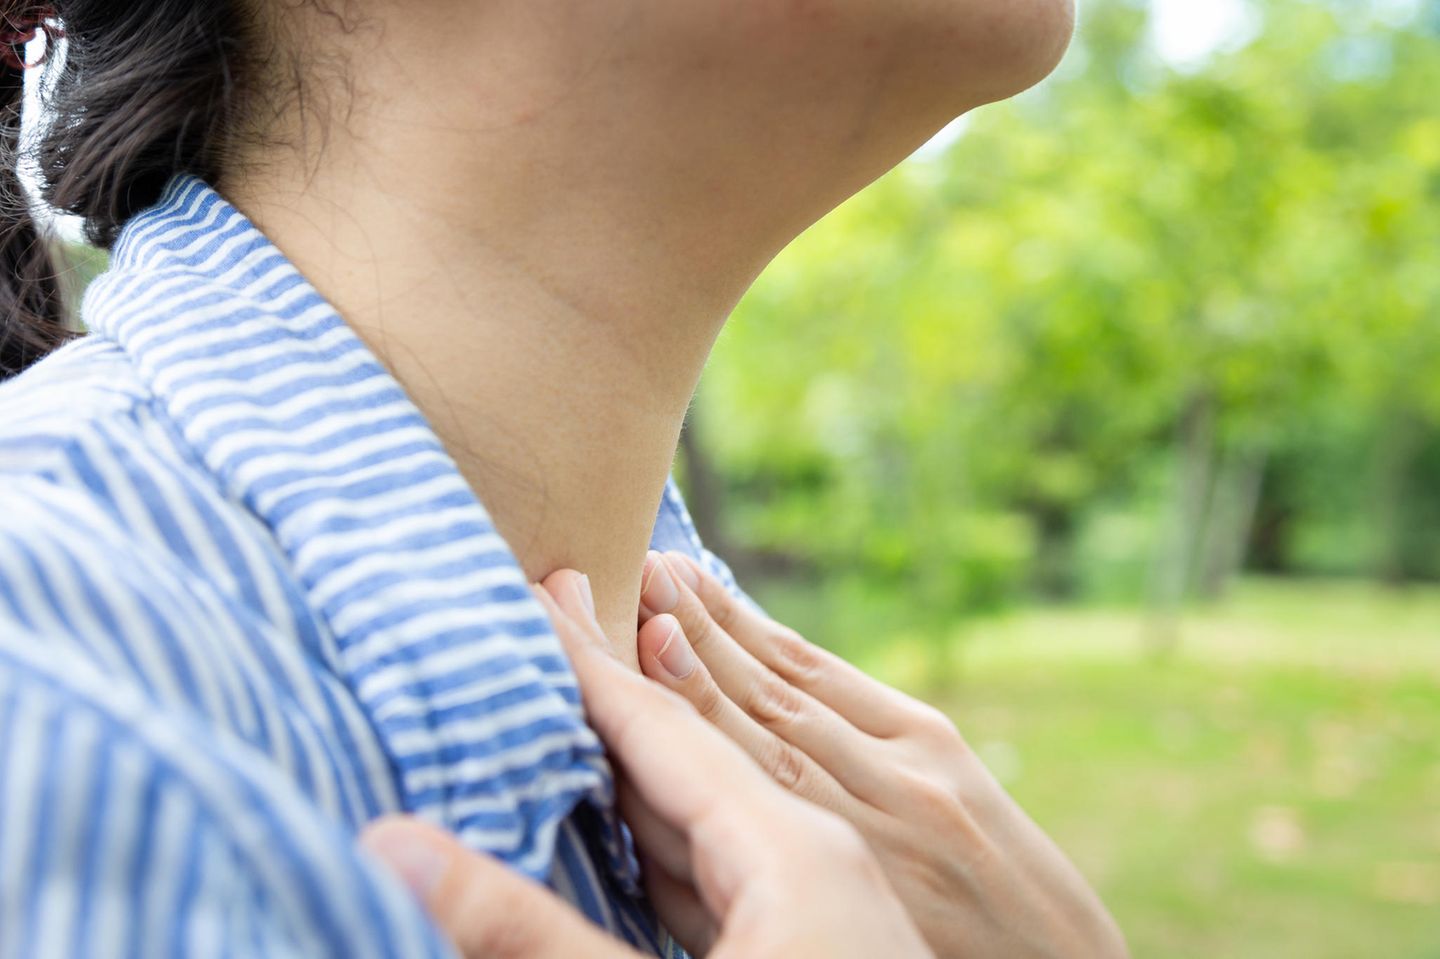 Hausmittel bei Mandelentzündung: Frau fasst sich an den Hals